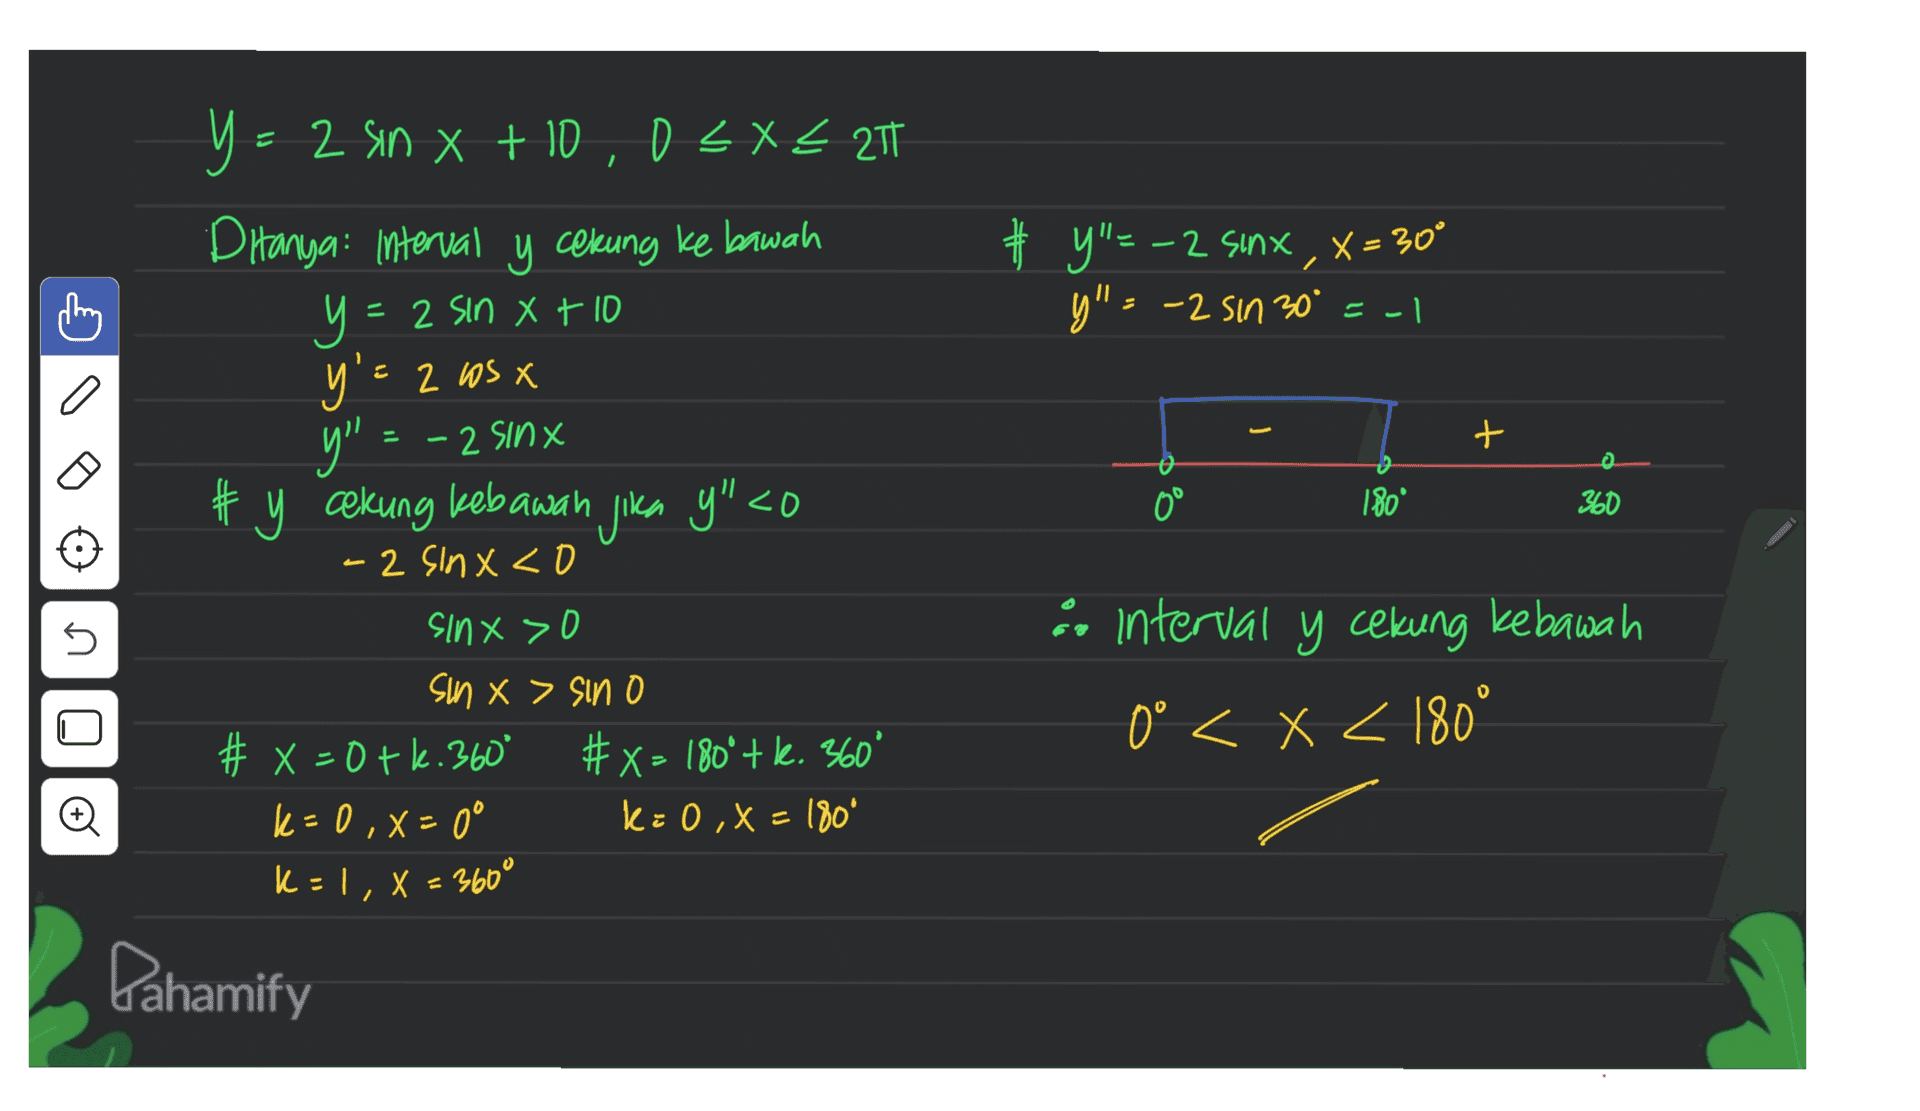 - Y - 2 sin x + 10,0 < X < 217 2 x X Ditanya interval y cekung ke bawah y = y y'e 2 WS X y"=-2 sinx,x=30° y"=-2 sin 30° = -1 = 2 Sin Xt 10 y" 2 sinx + # y cekung kebawah jika y" <0 0° 180 360 5 - 2 sinx<0 sinx > 0 sun x > sino # x=0+6.360° #x= 180*+k. 360 k=0, x= 0° k=0, x=1809 k = 1, X = 360° ao interval y cekung kebawah 0° < x < 180° 0< o C Pahamify 